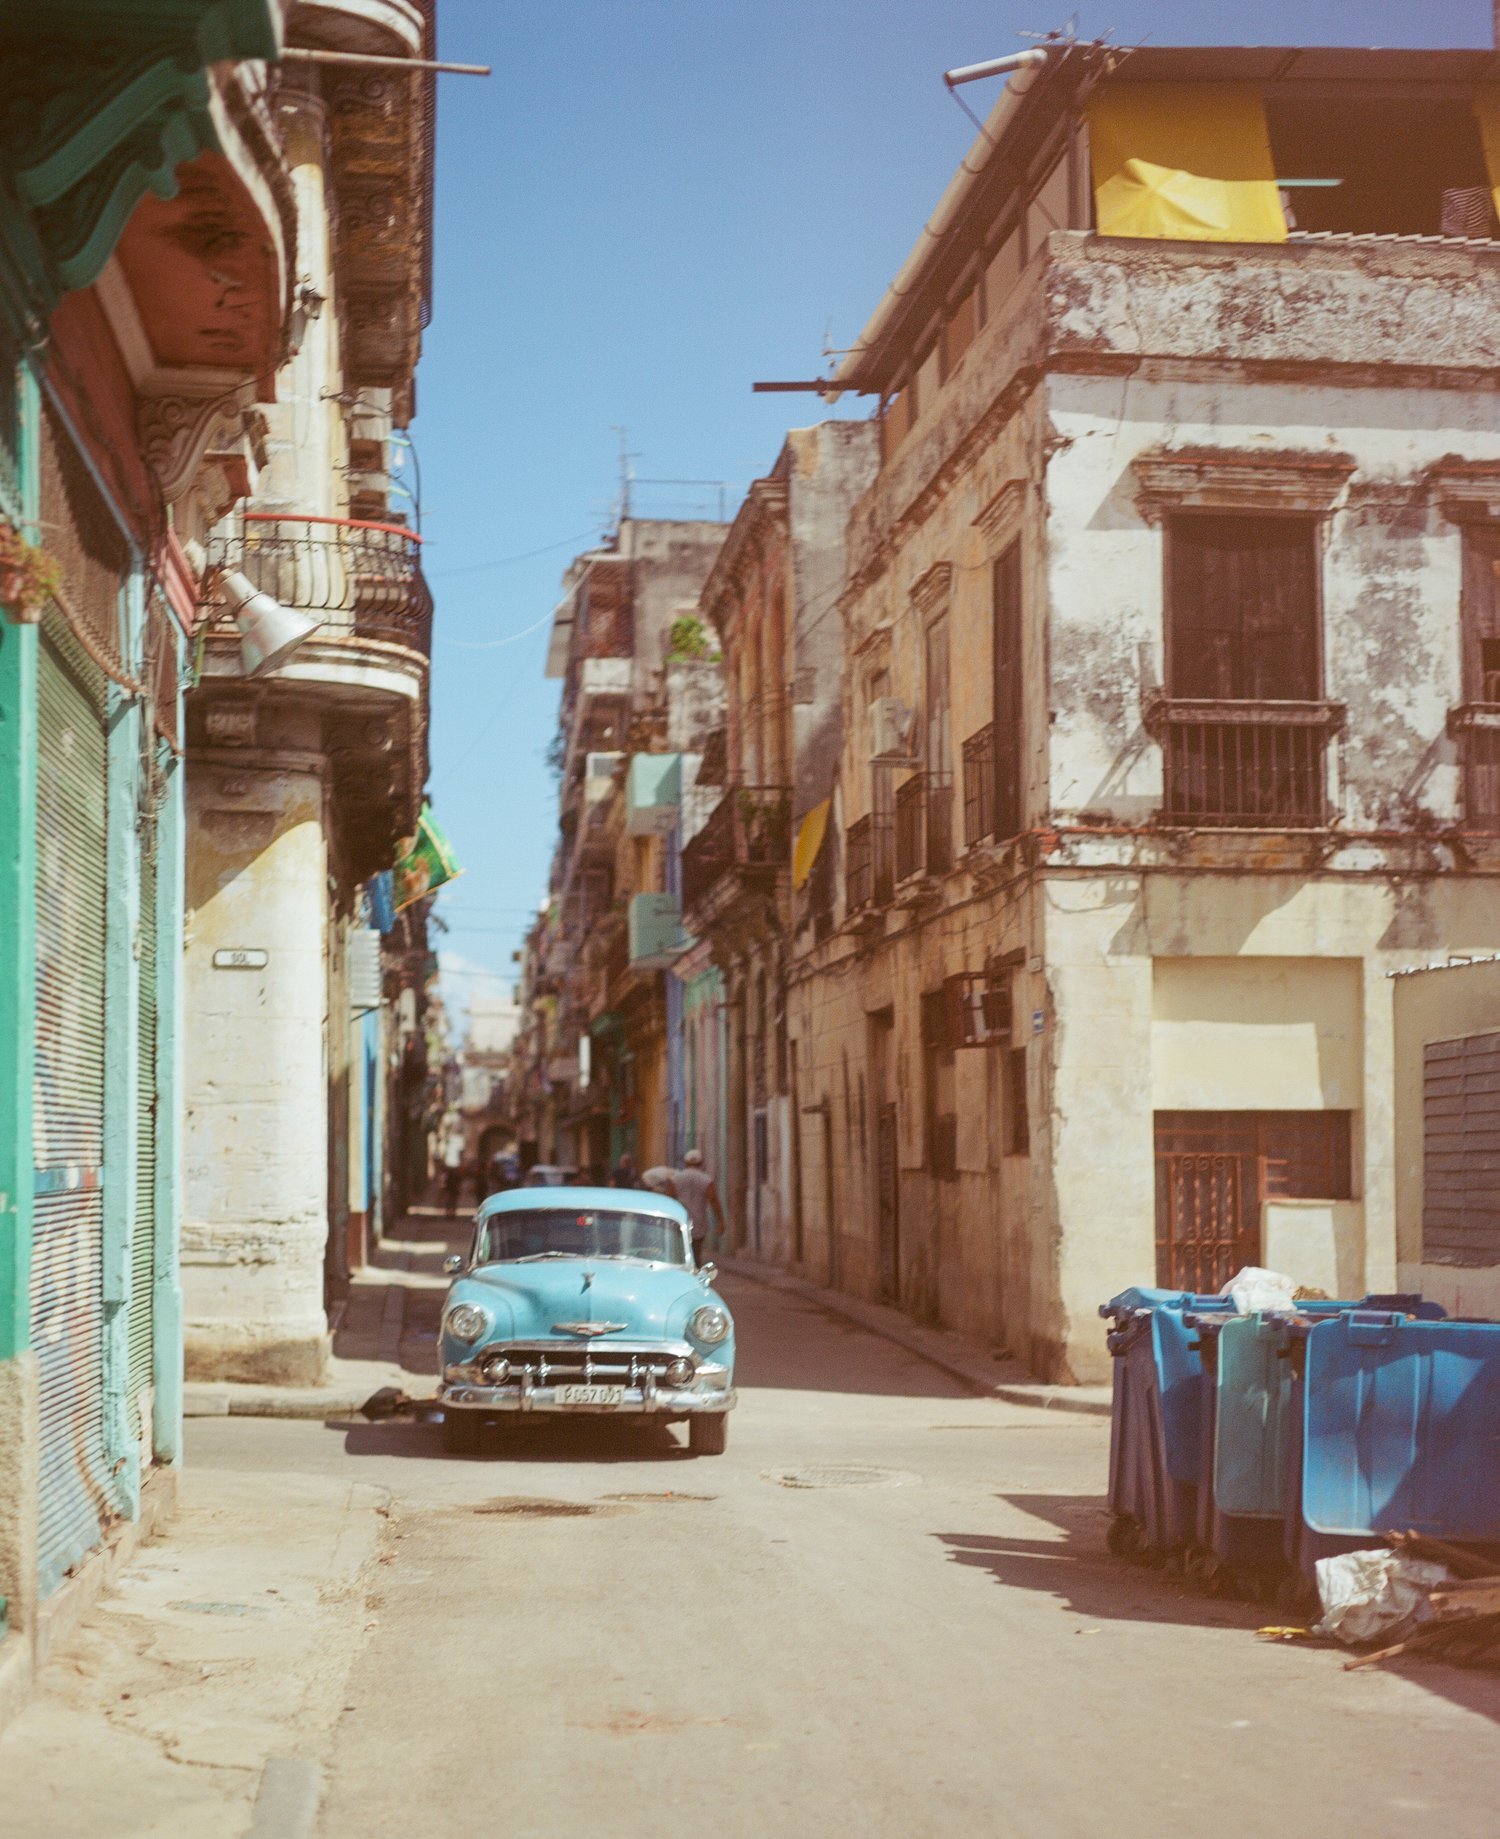 Cuba2.jpeg